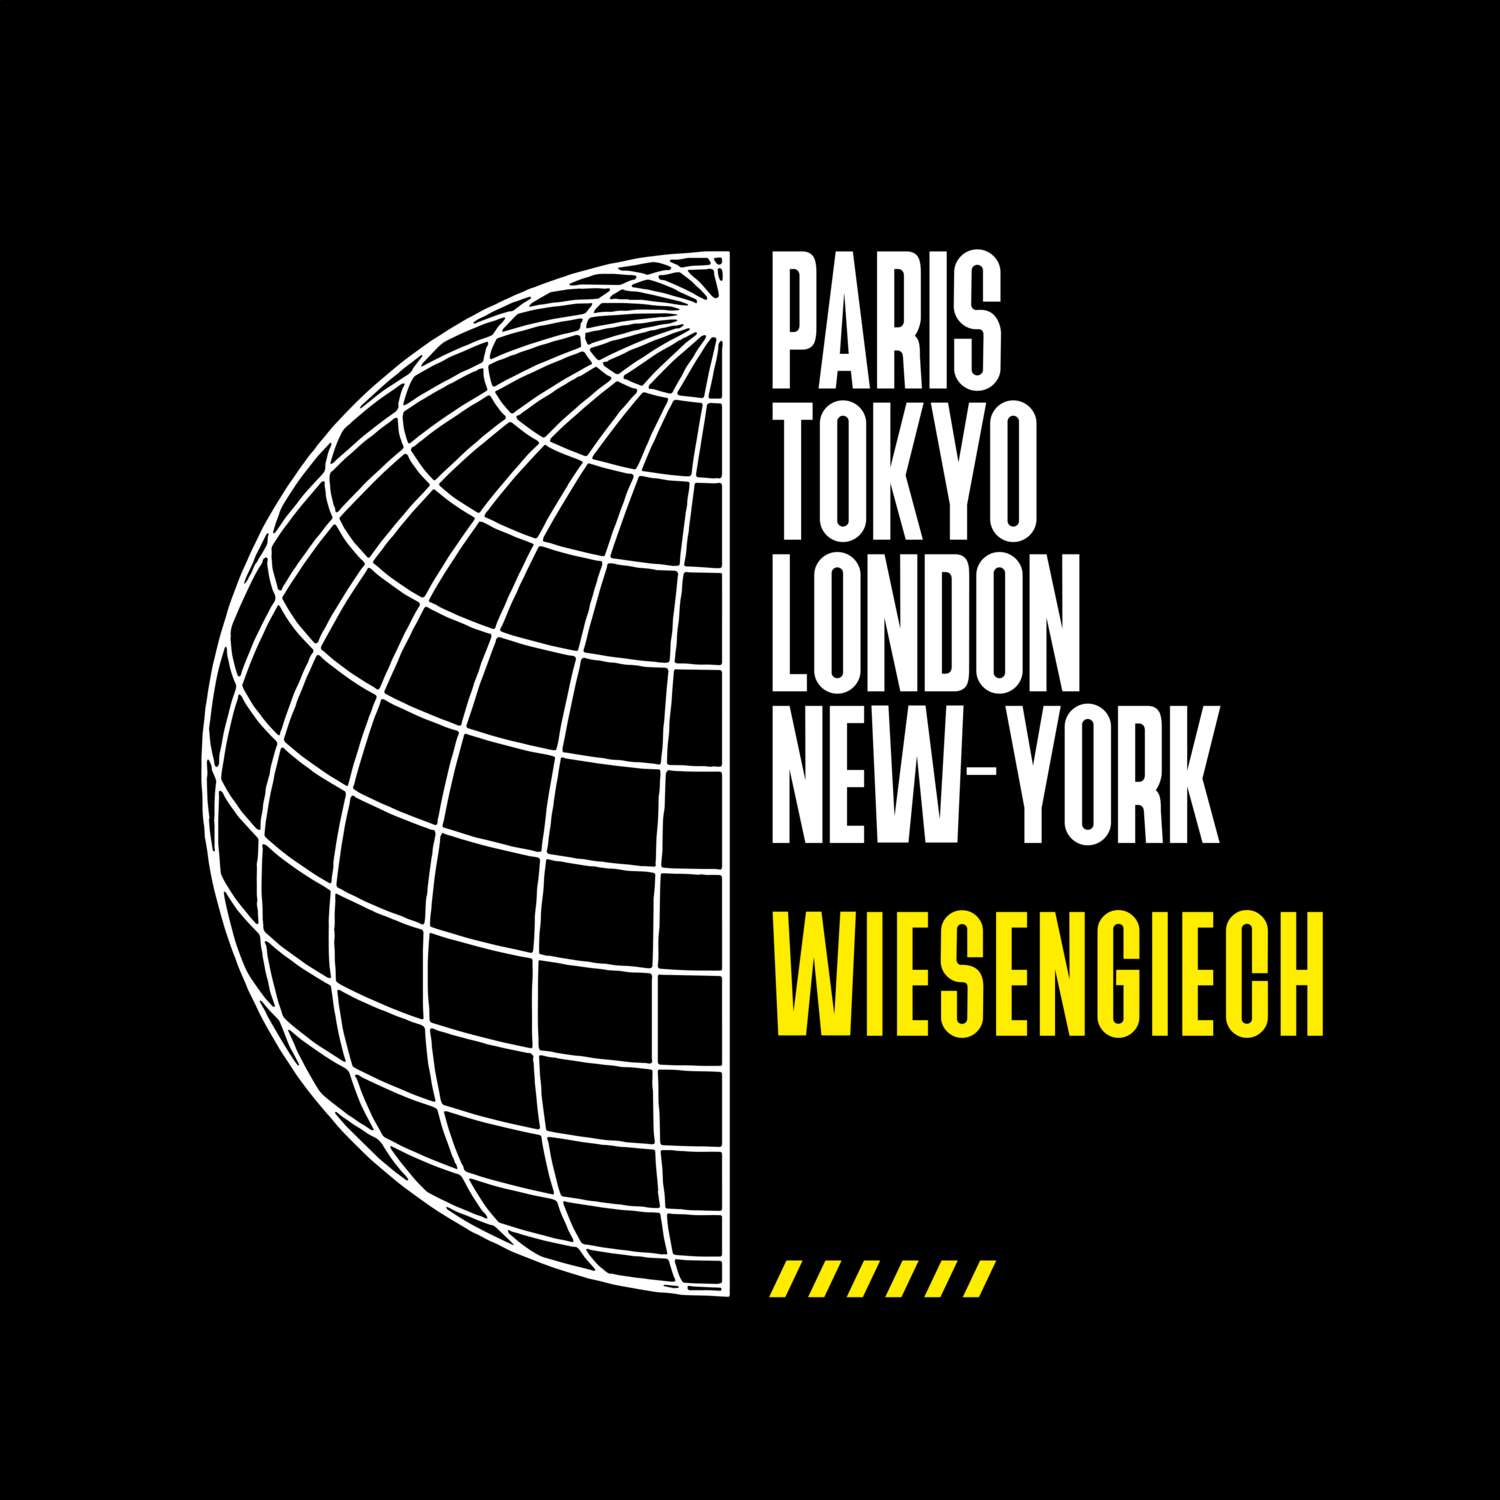 Wiesengiech T-Shirt »Paris Tokyo London«